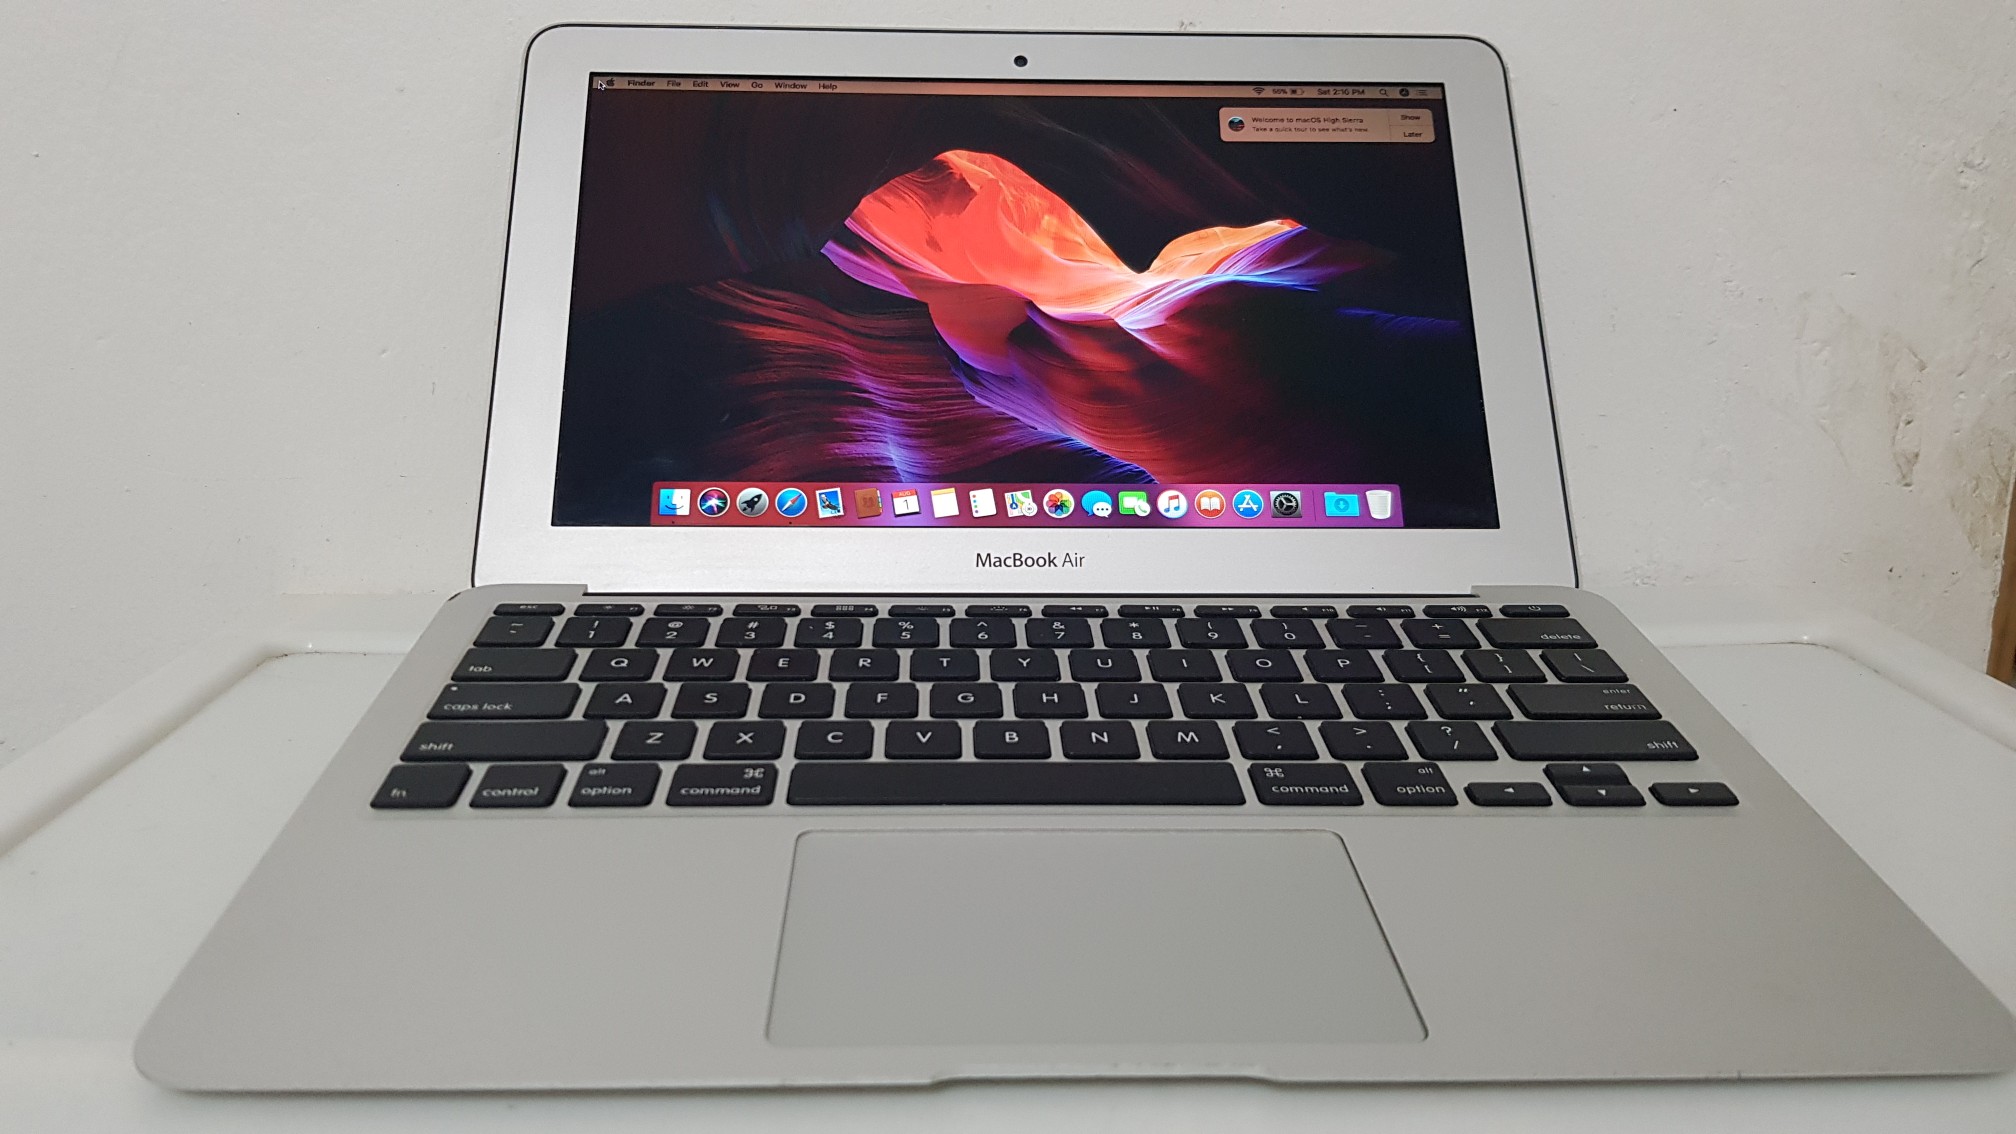 computadoras y laptops - Macbook Air año 2015 13 Pulg Core i5 Ram 4gb Disco 128gb 